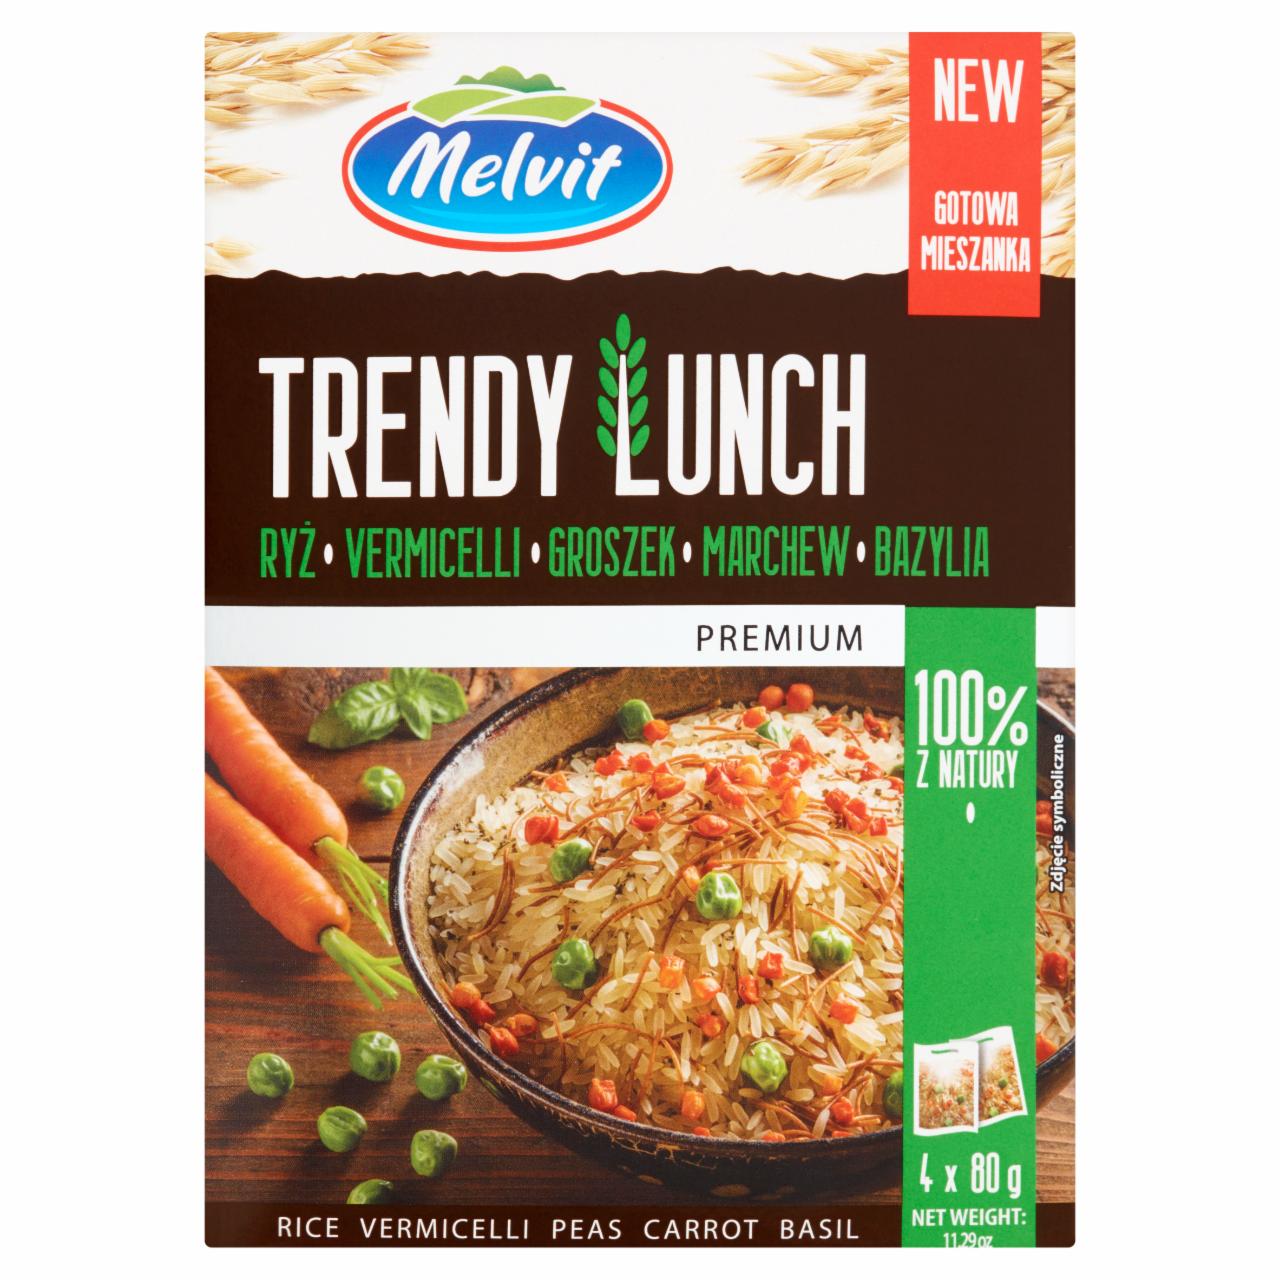 Фото - Trendy lunch rýže, vermicelli, hrášek, mrkev, bazalka Melvit